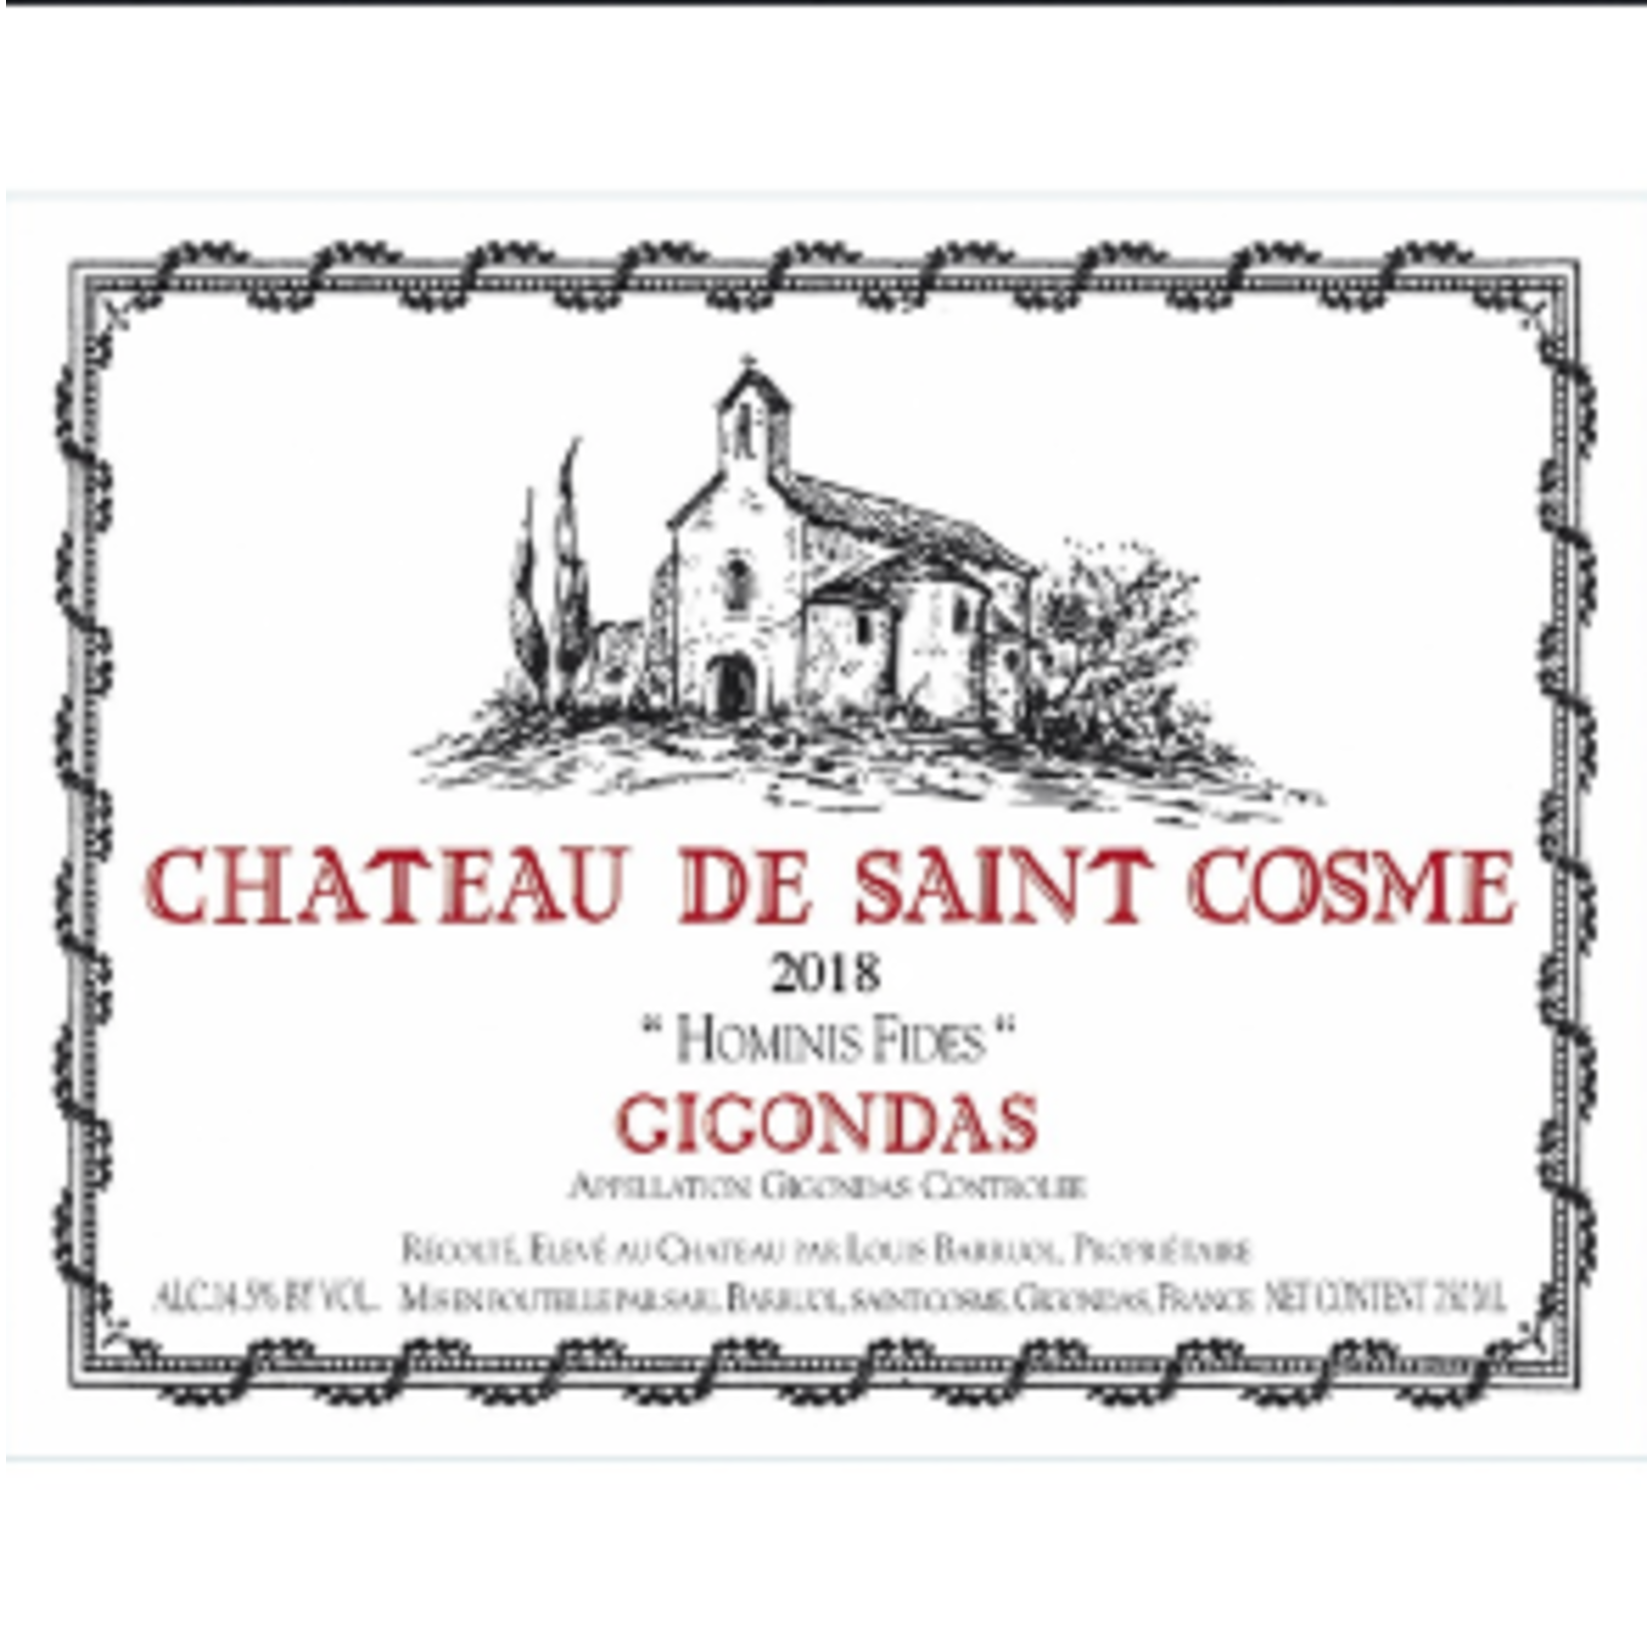 Chateau de Saint Cosme Ch. Saint De Cosme Gigondas 2020  Rhone, France